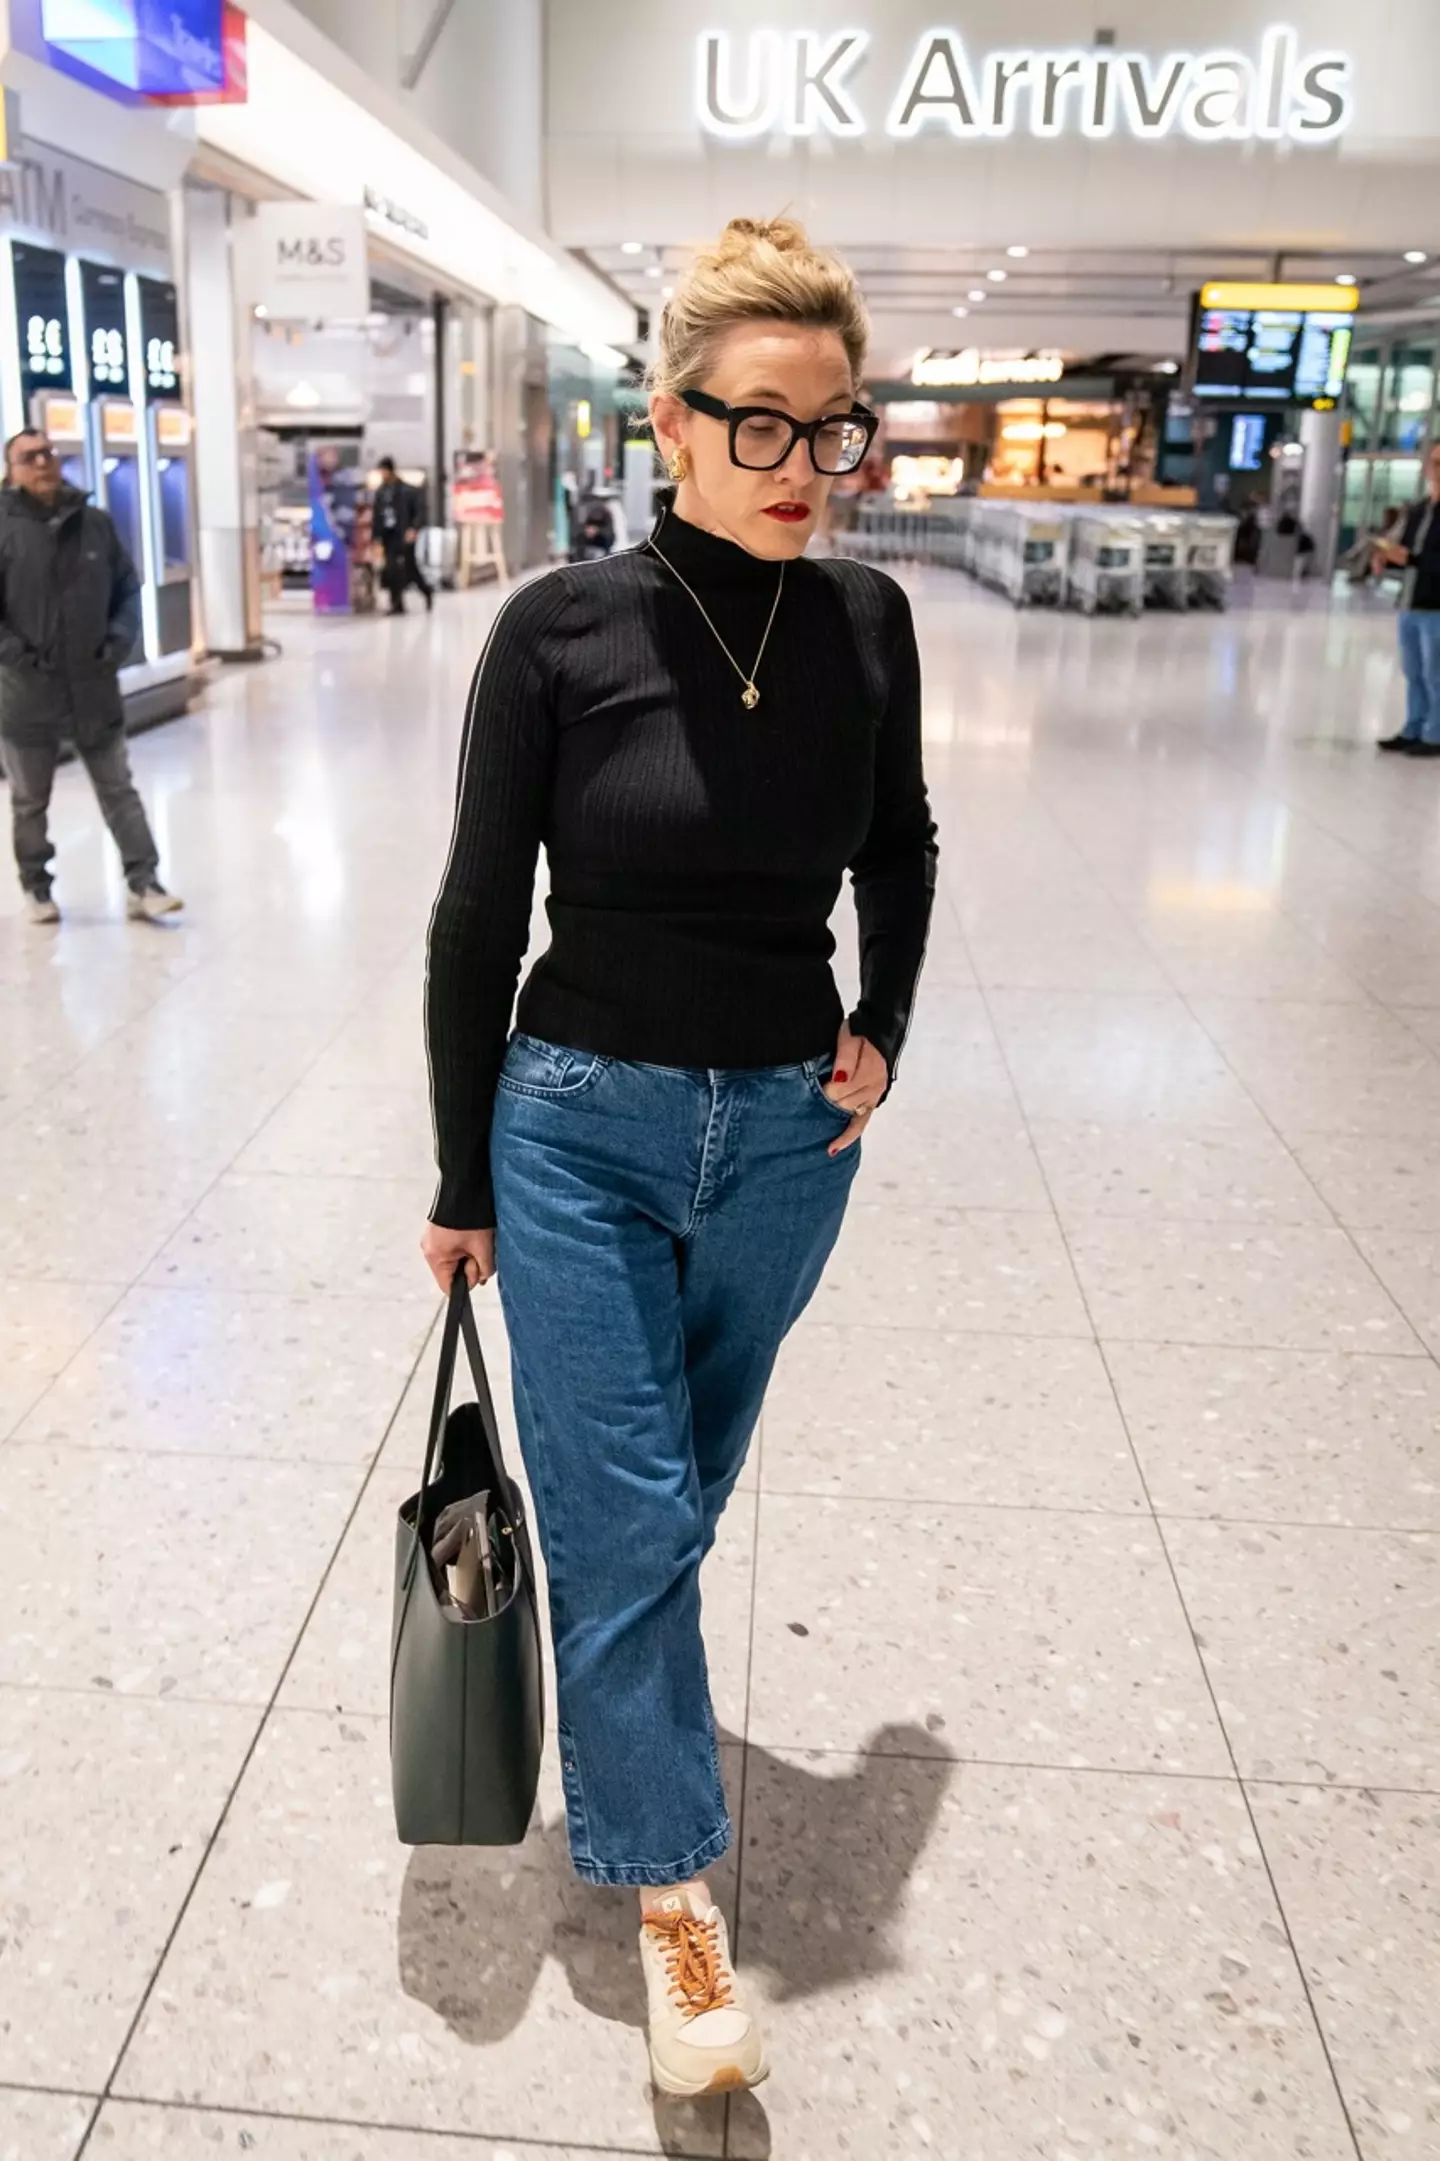 Grace Dent was spotted arriving back in UK after her sudden I’m A Celebrity departure.